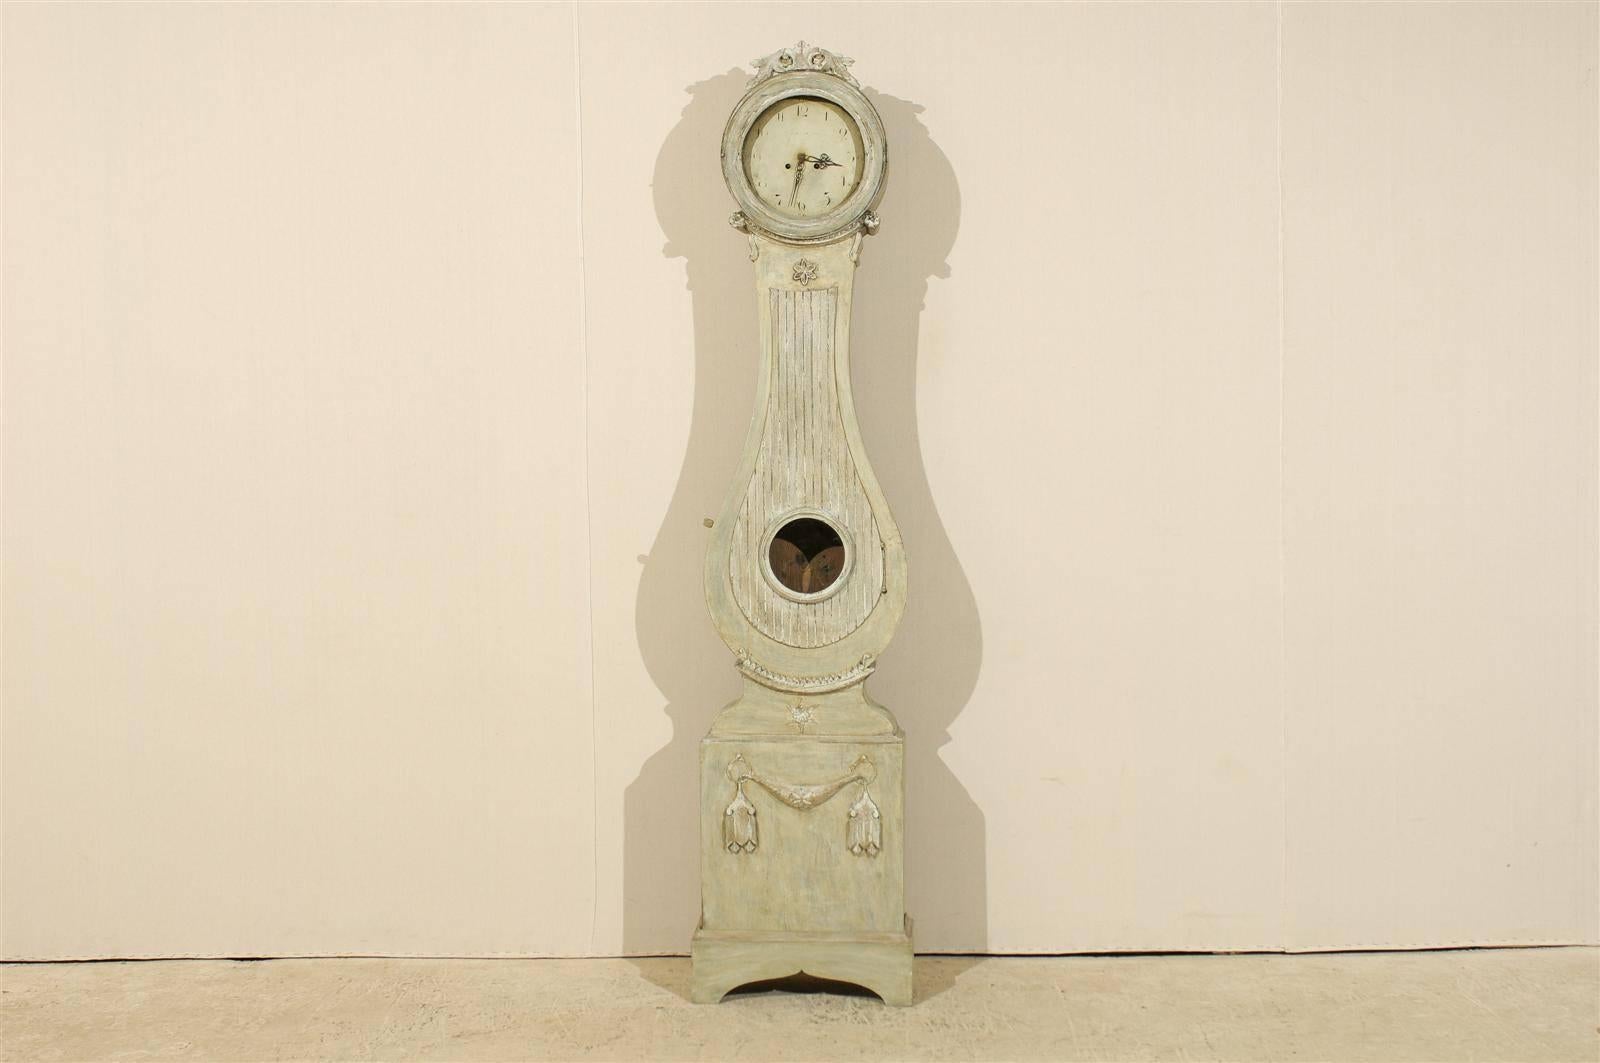 Une horloge suédoise Fryksdahl du 19ème siècle. Cette horloge suédoise présente un joli cimier sculpté avec un décor de feuillage. Le col est décoré de rosettes sur le côté et d'un motif floral en son centre. Cette horloge a conservé sa face